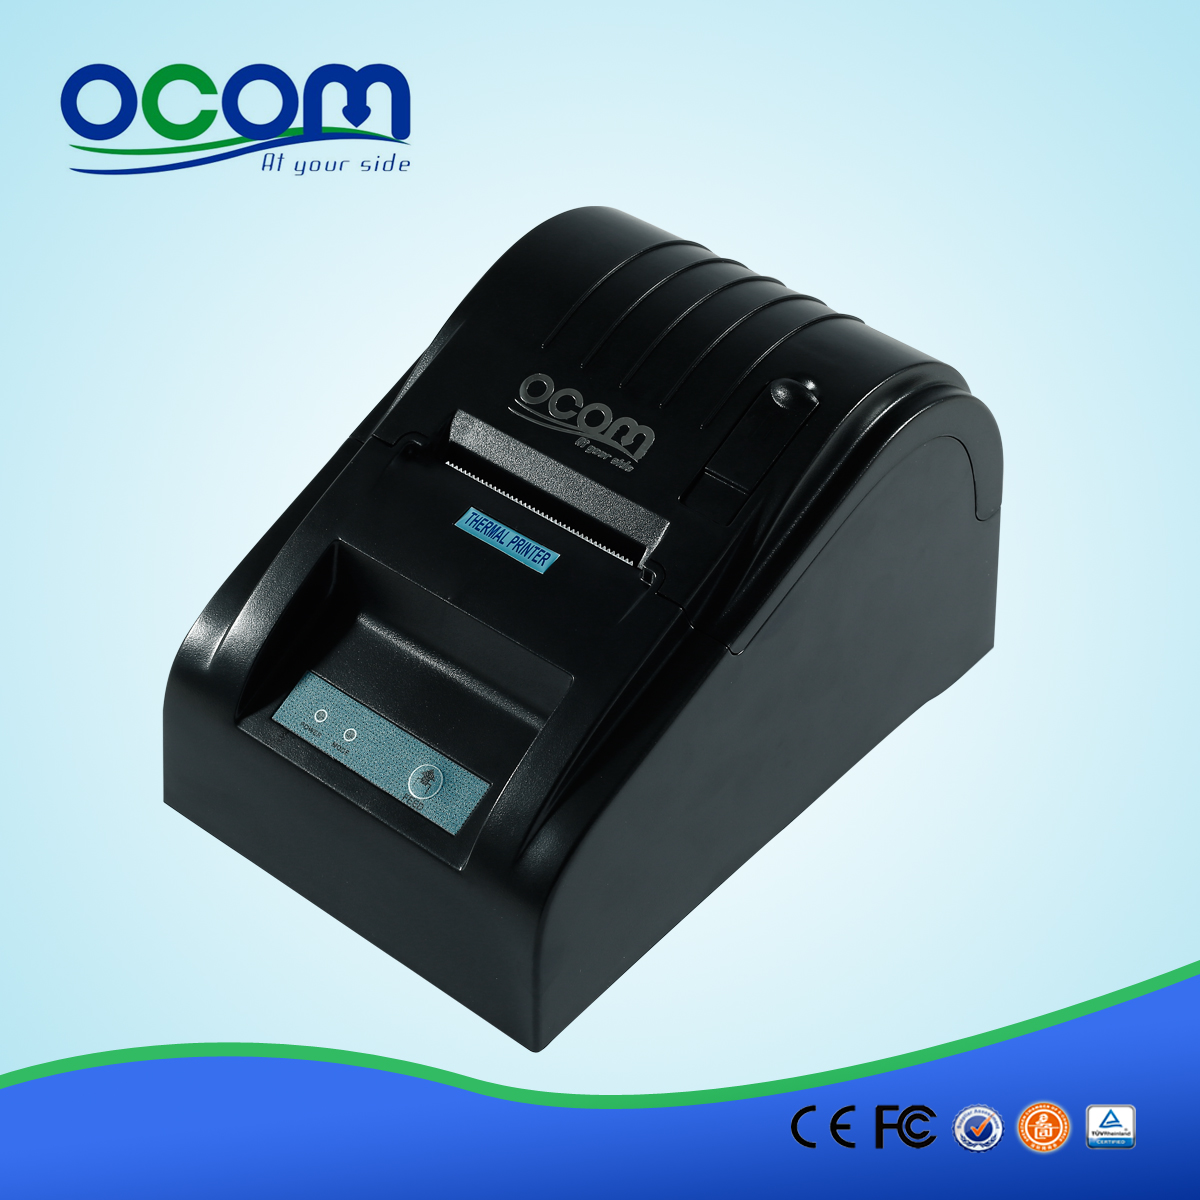 OCPP-585 2英寸热敏条码打印pos机